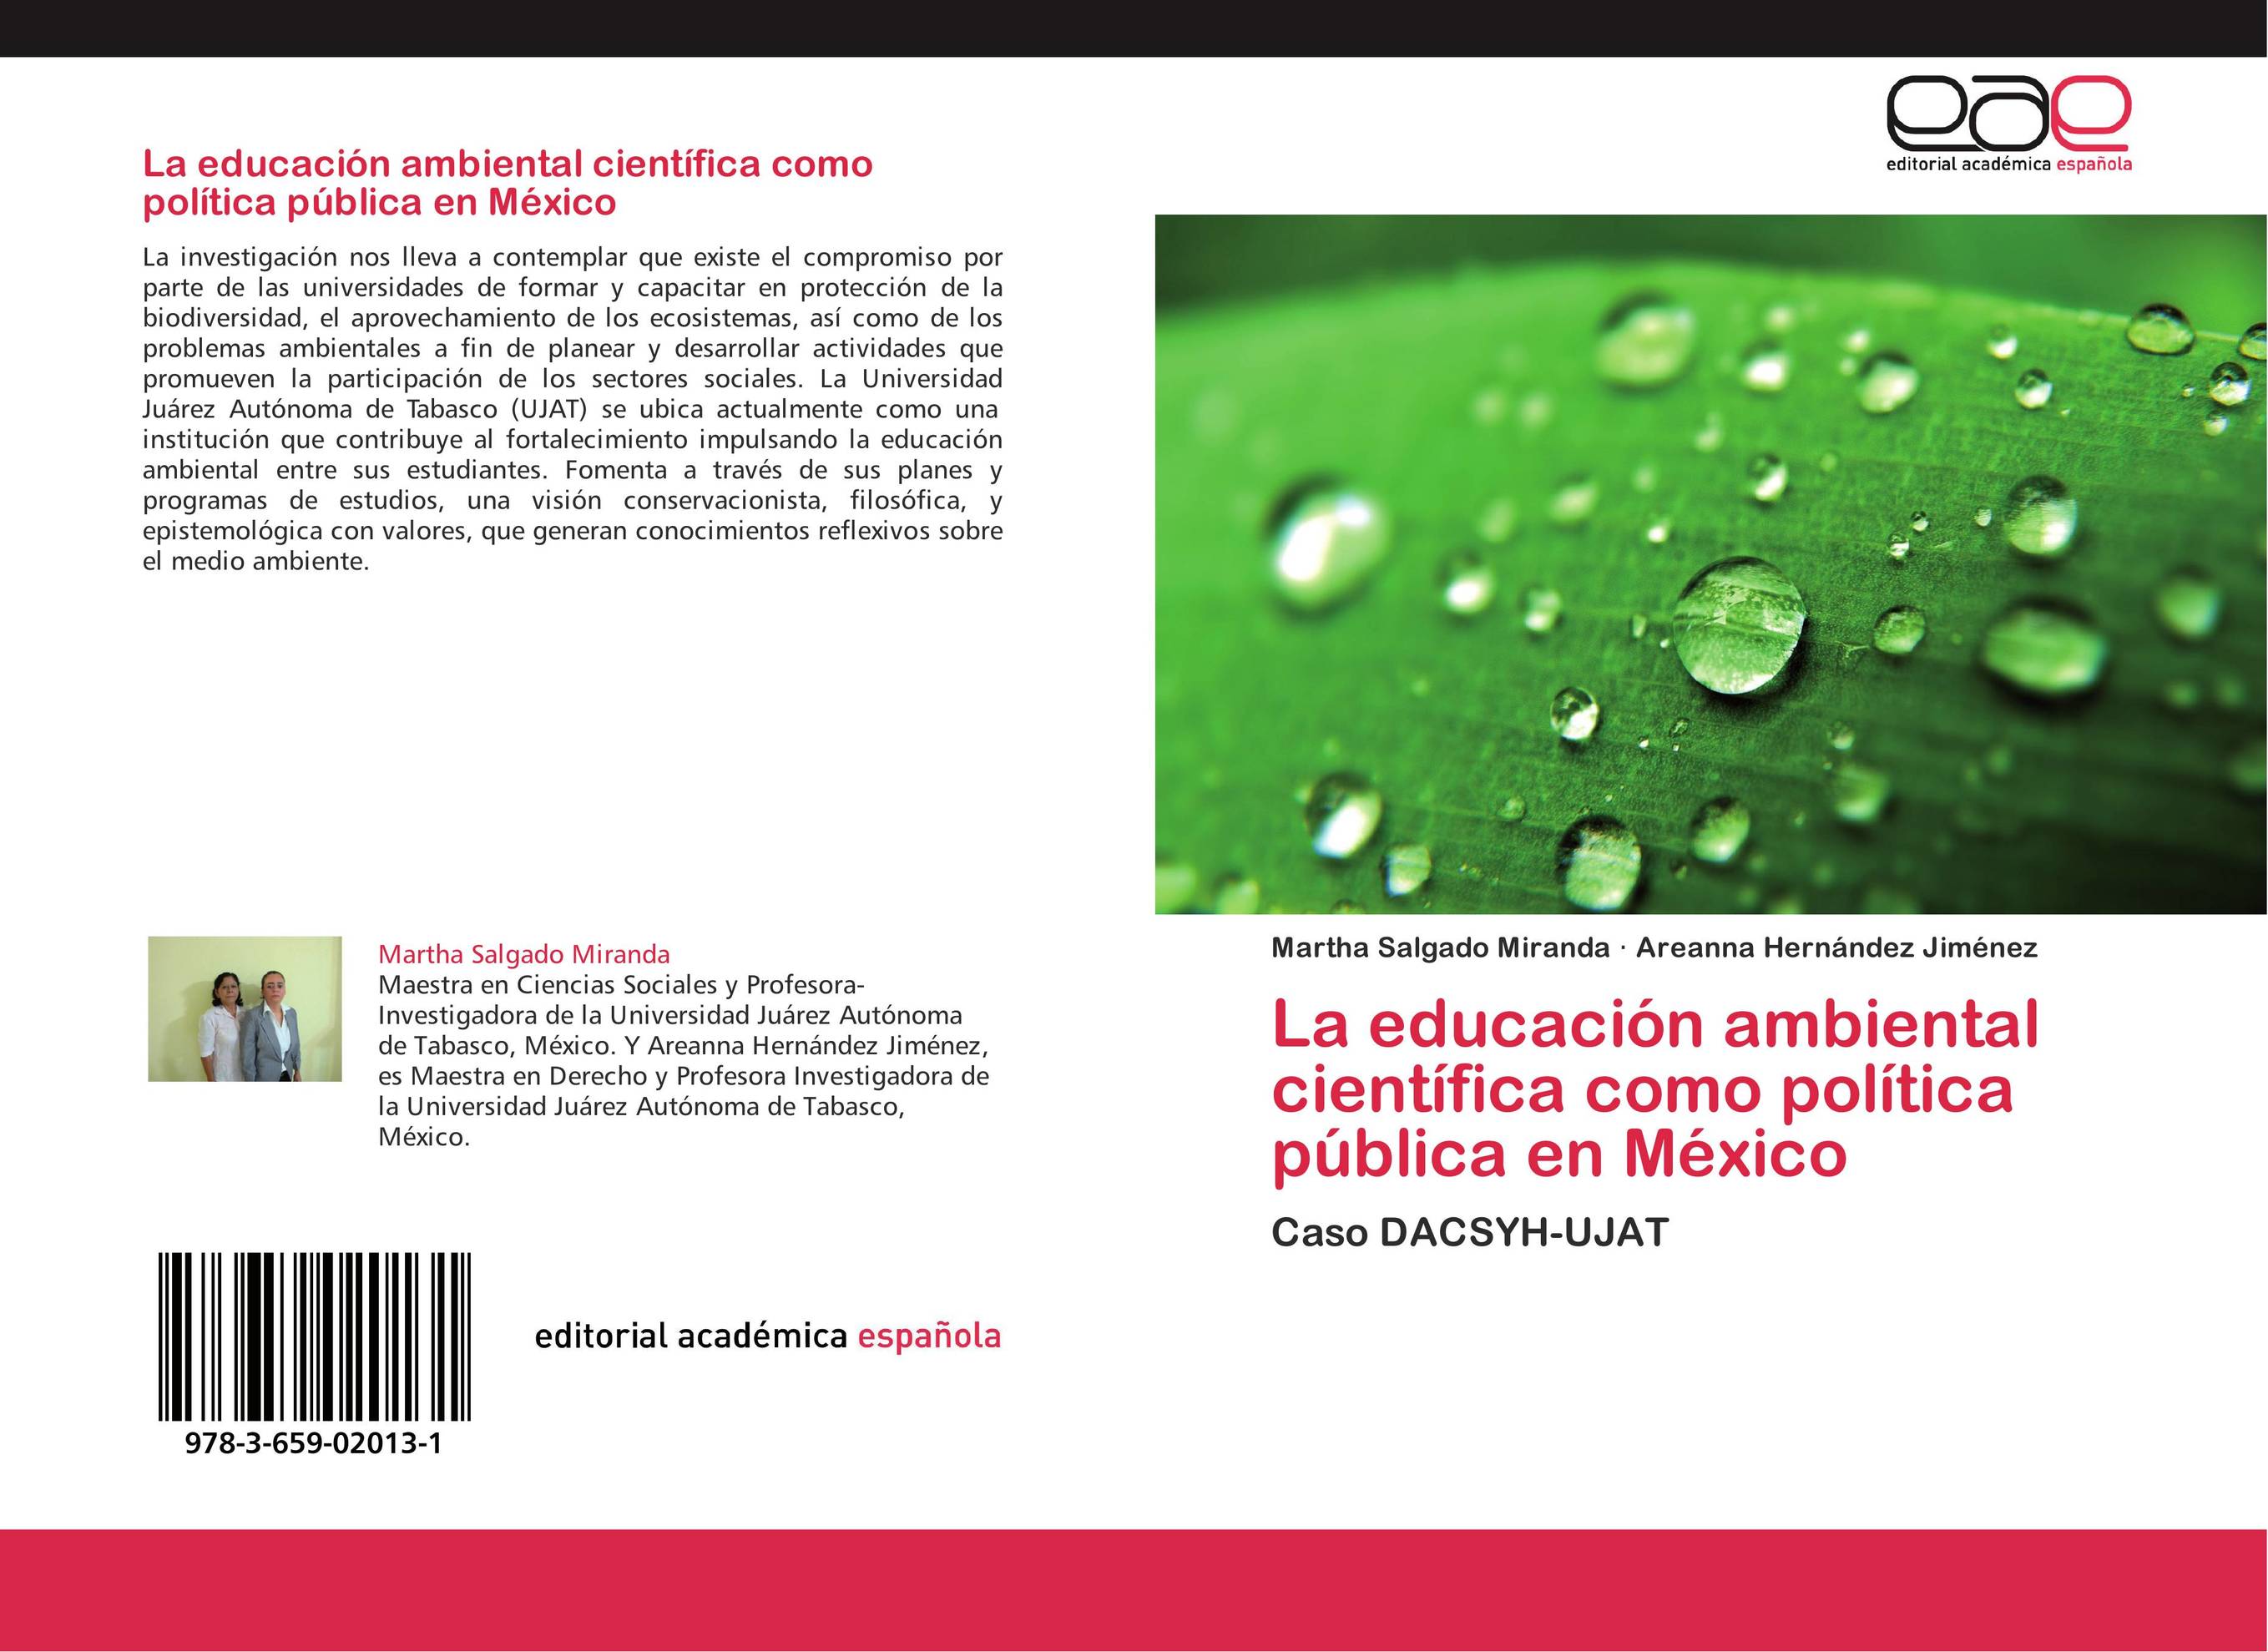 La educación ambiental científica como política pública en México